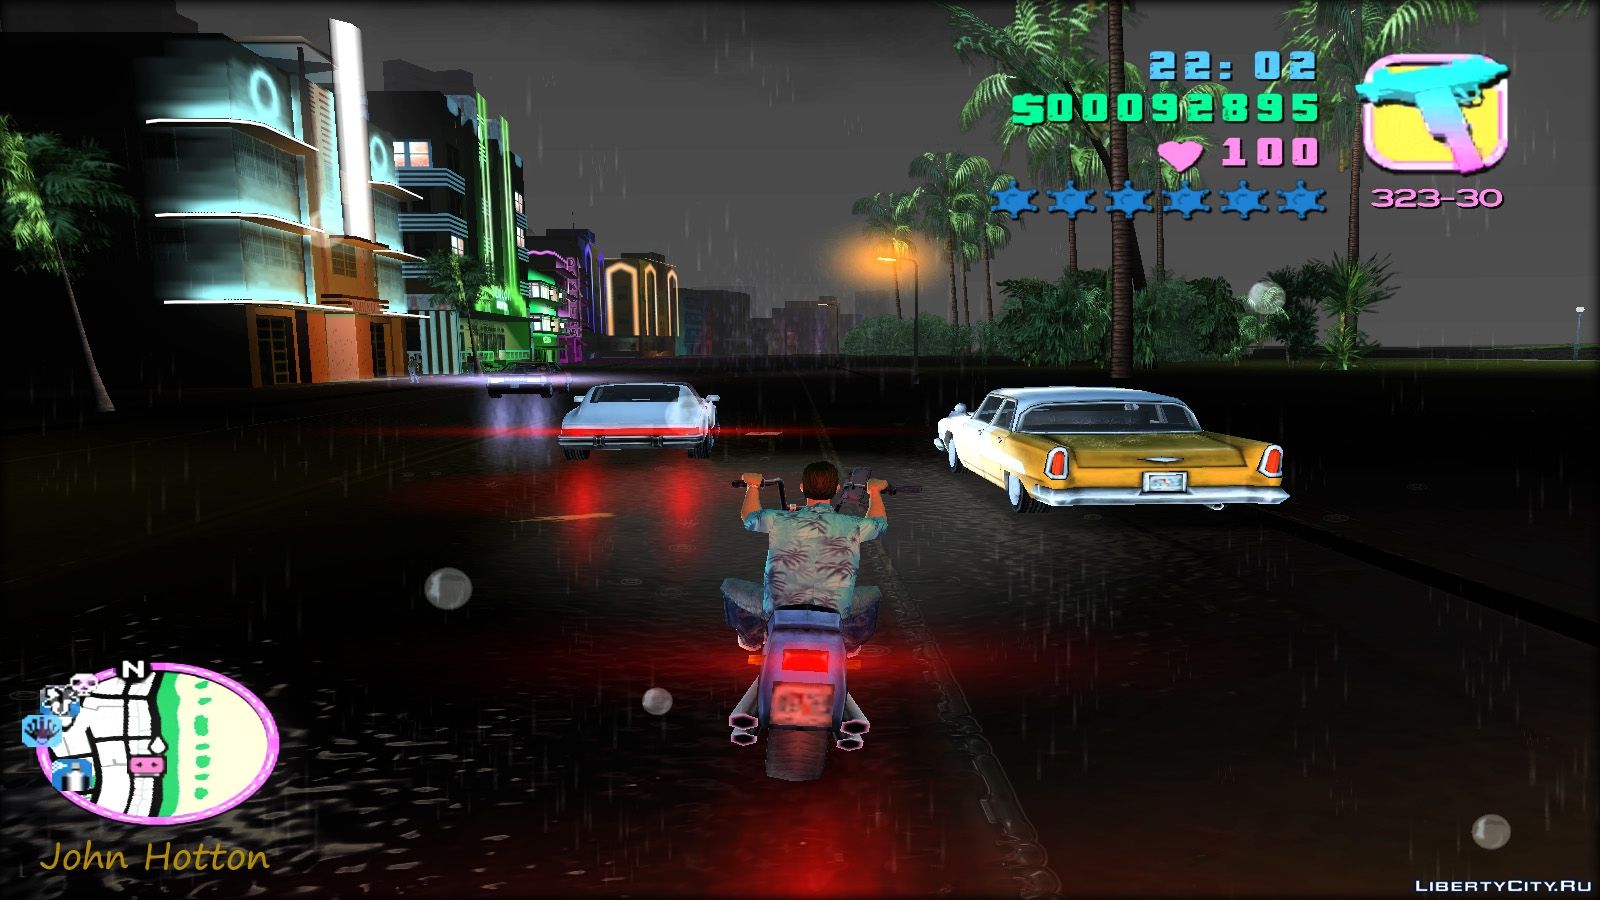 Гта вайс сити моды на графику. ГТА Вайс Сити Mod. Grand Theft auto: vice City новая Графика. Grand Theft auto: vice City 2002. ГТА Вайс Сити мод на графику.